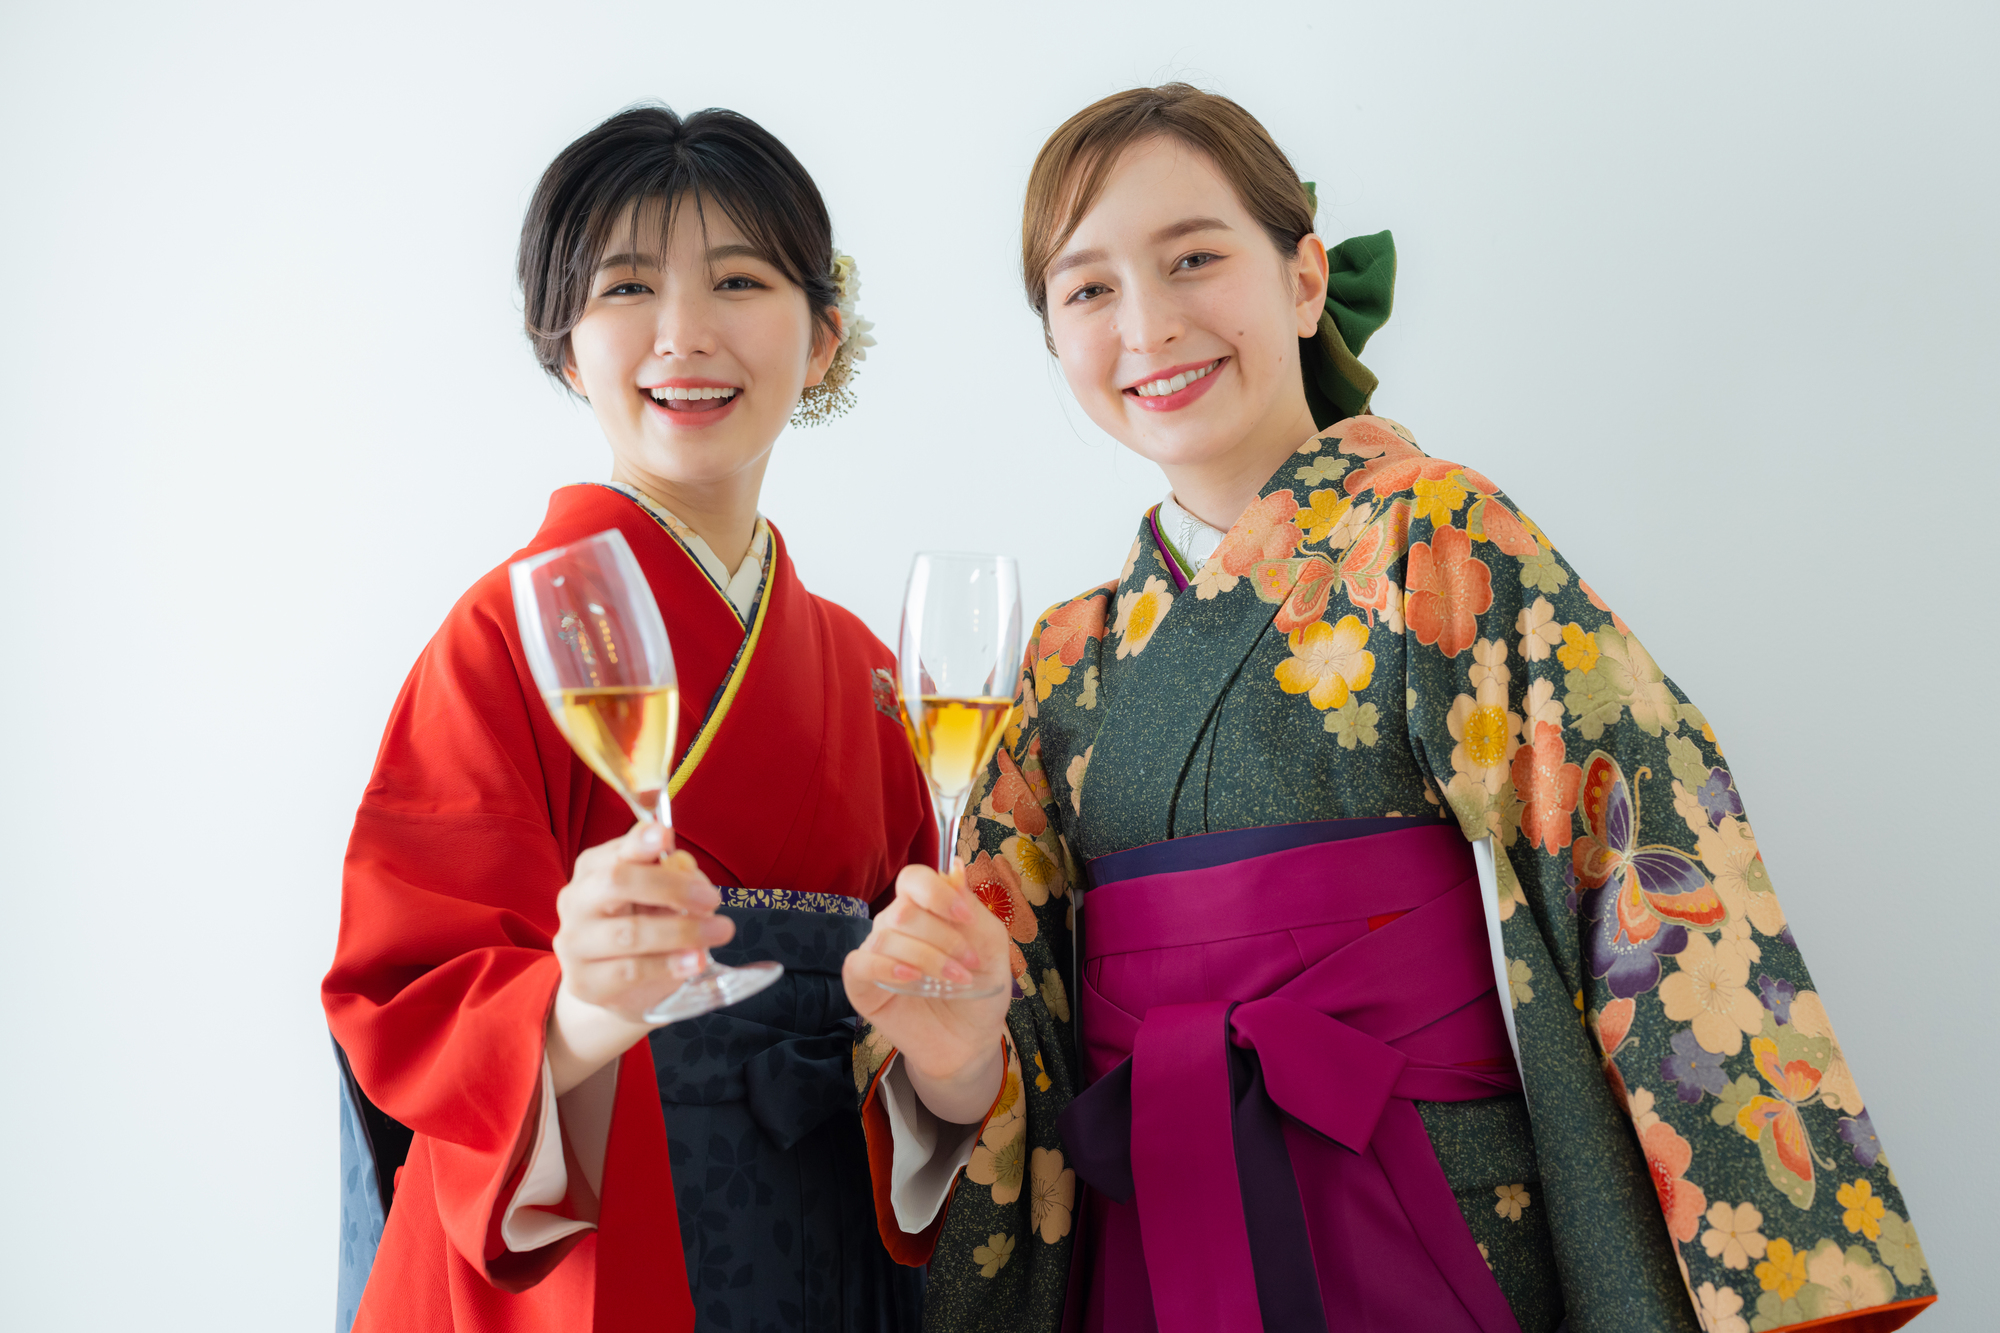 シャンパングラスを持った袴の女性二人組